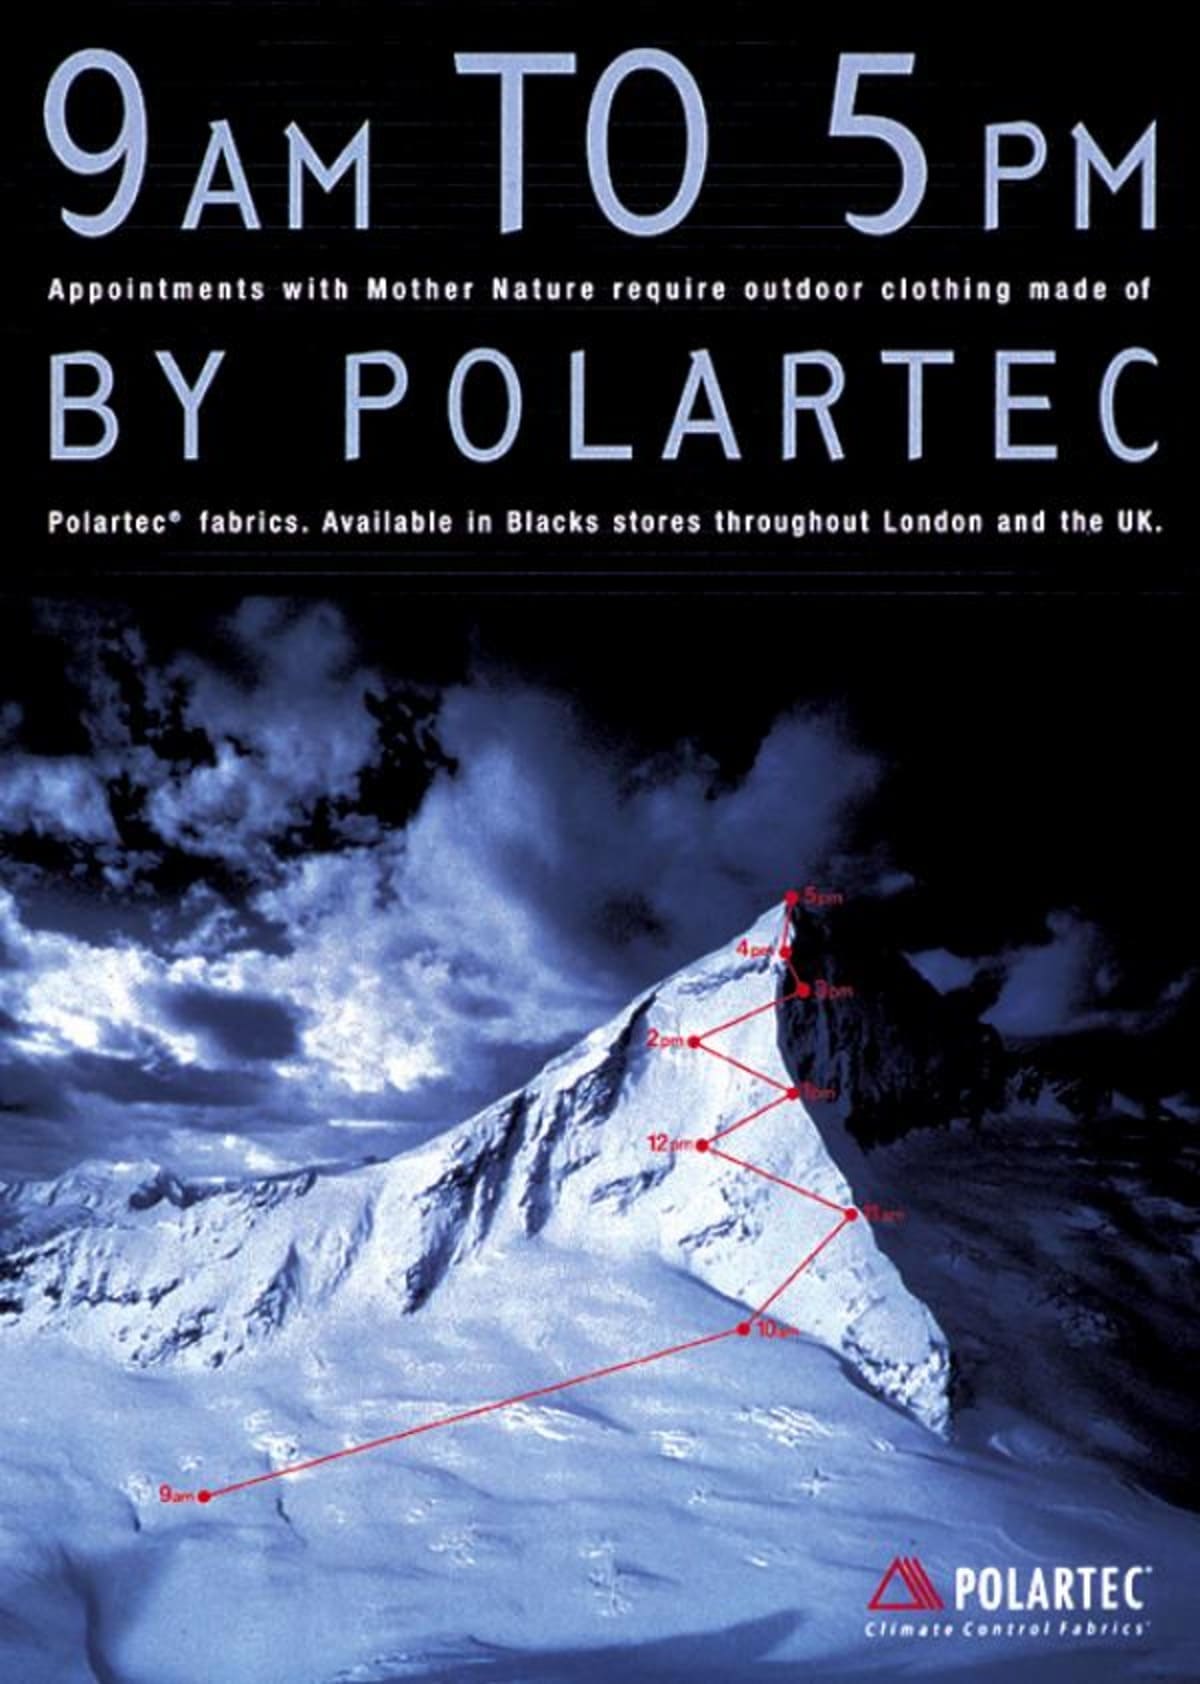 Polartec Advert